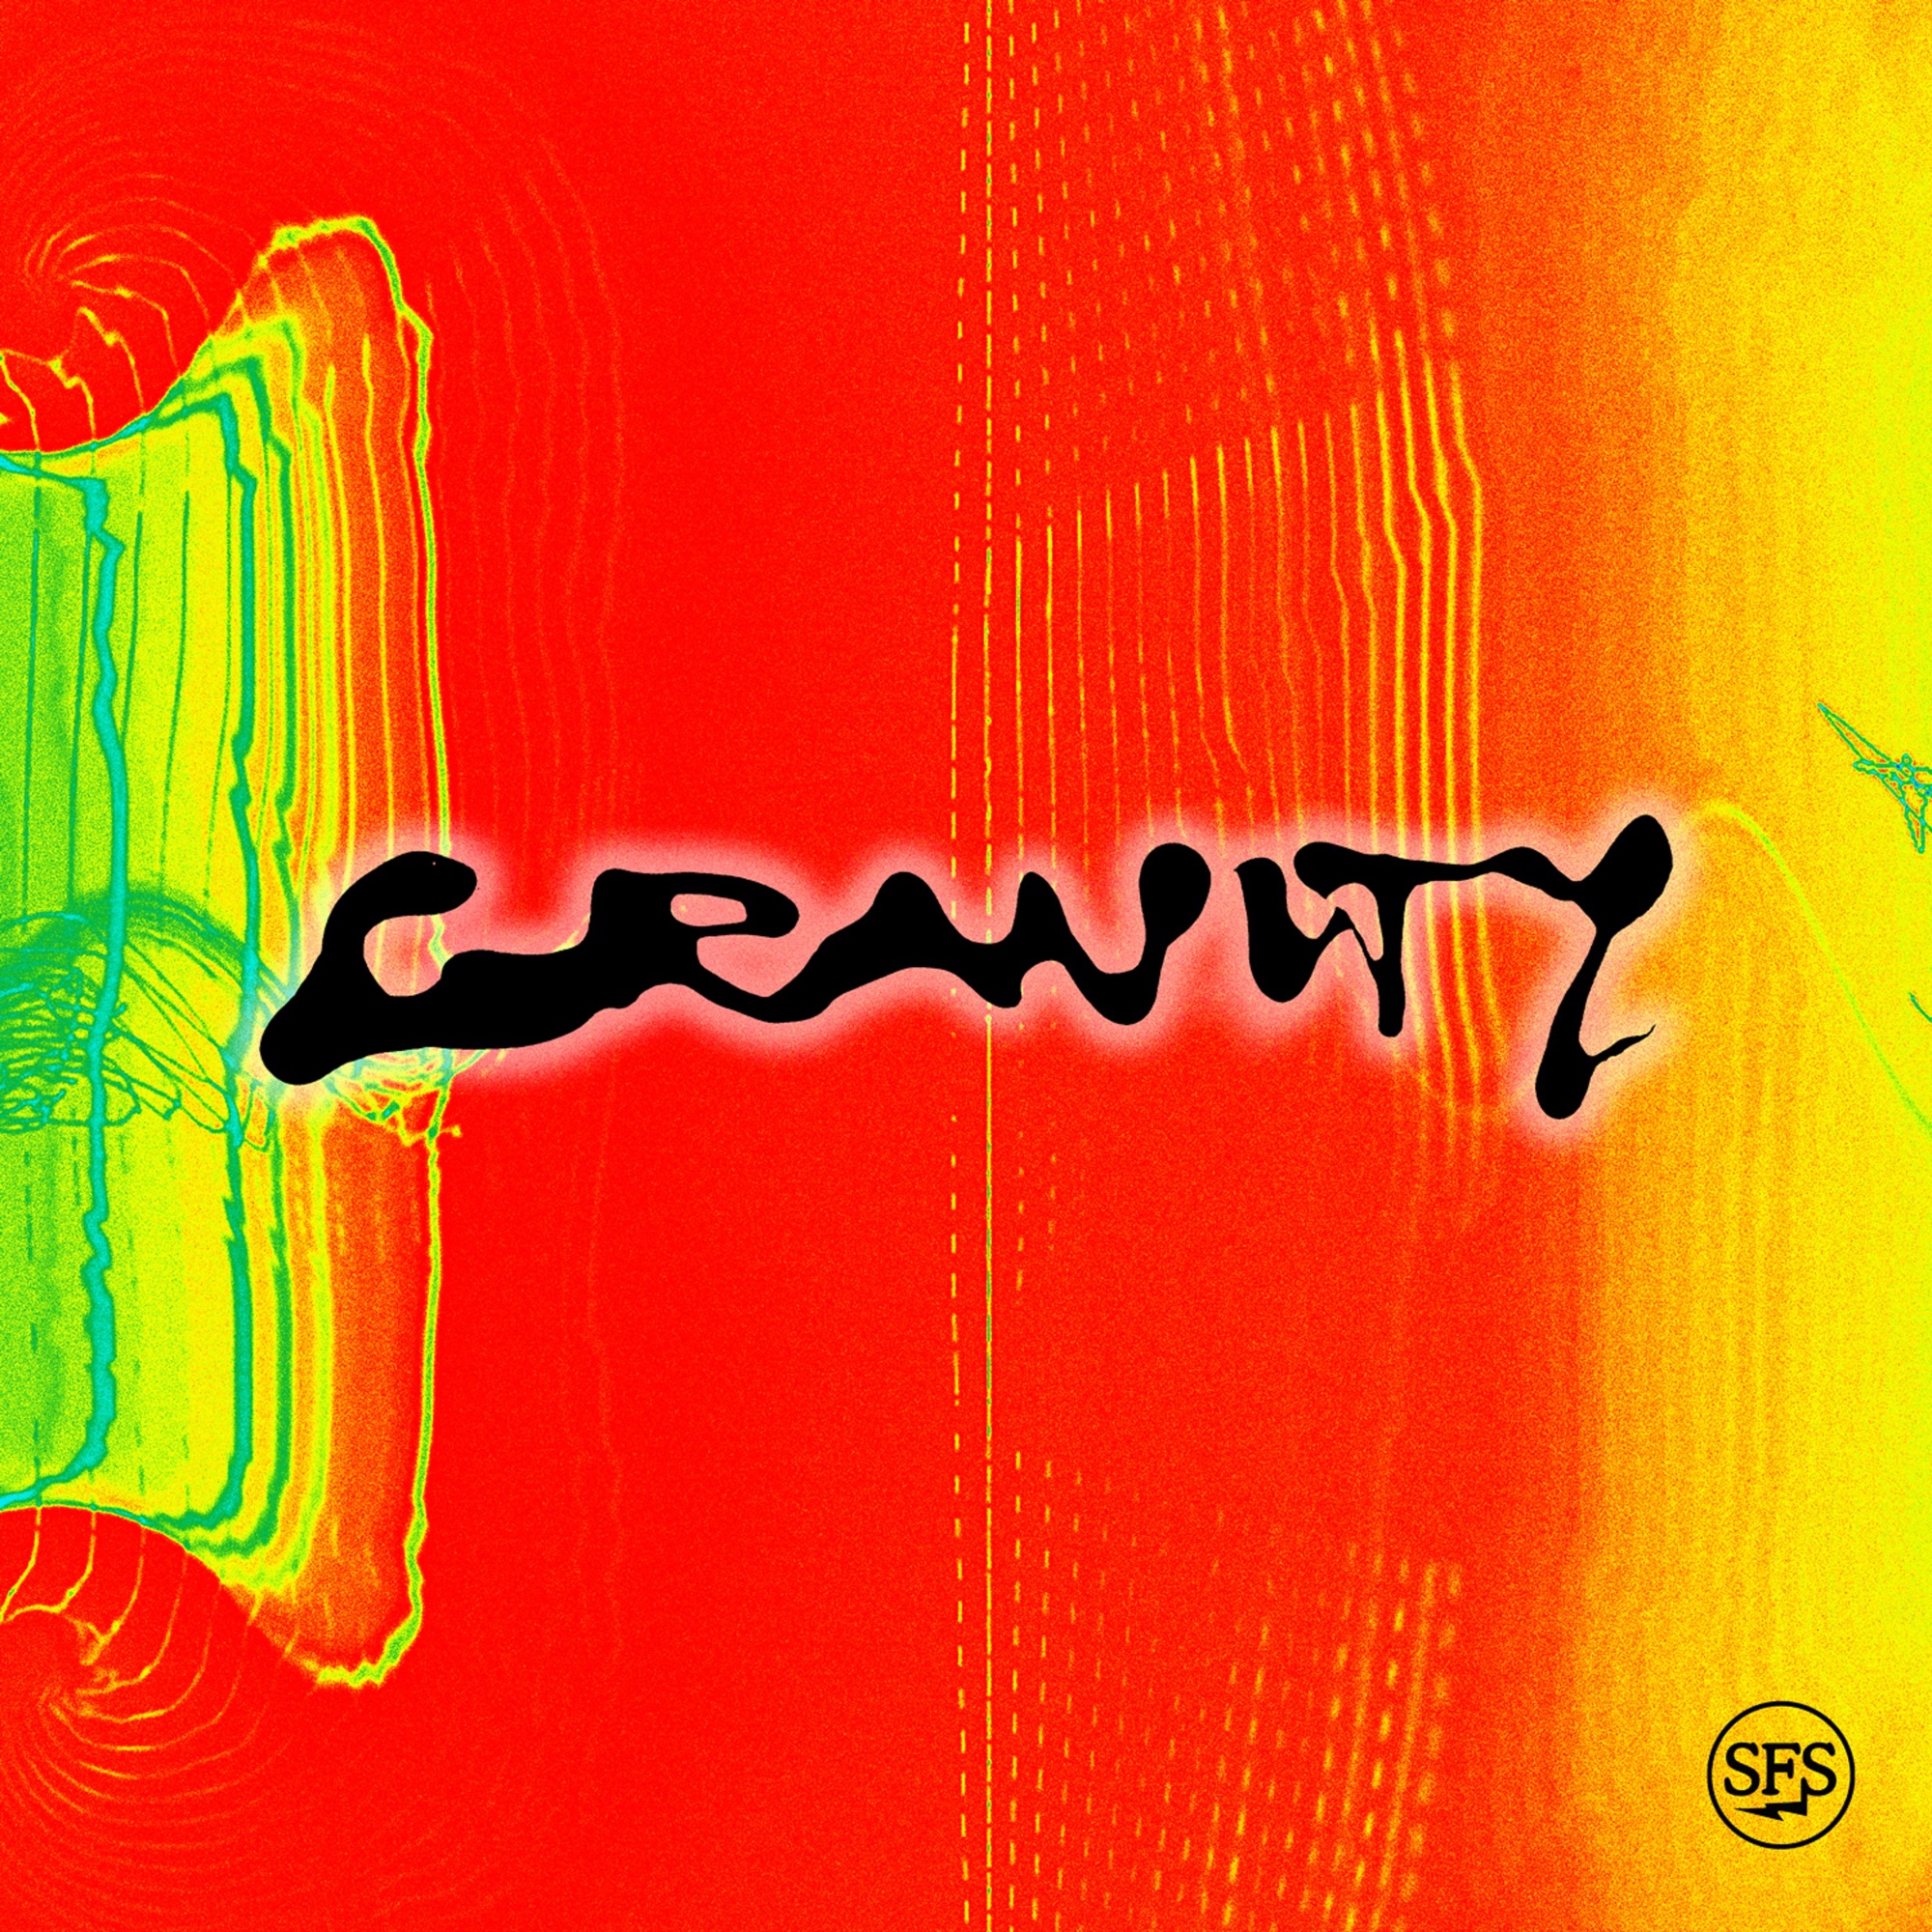 Brent Faiyaz & DJ Dahi - Gravity (feat. Tyler, The Creator) - Single